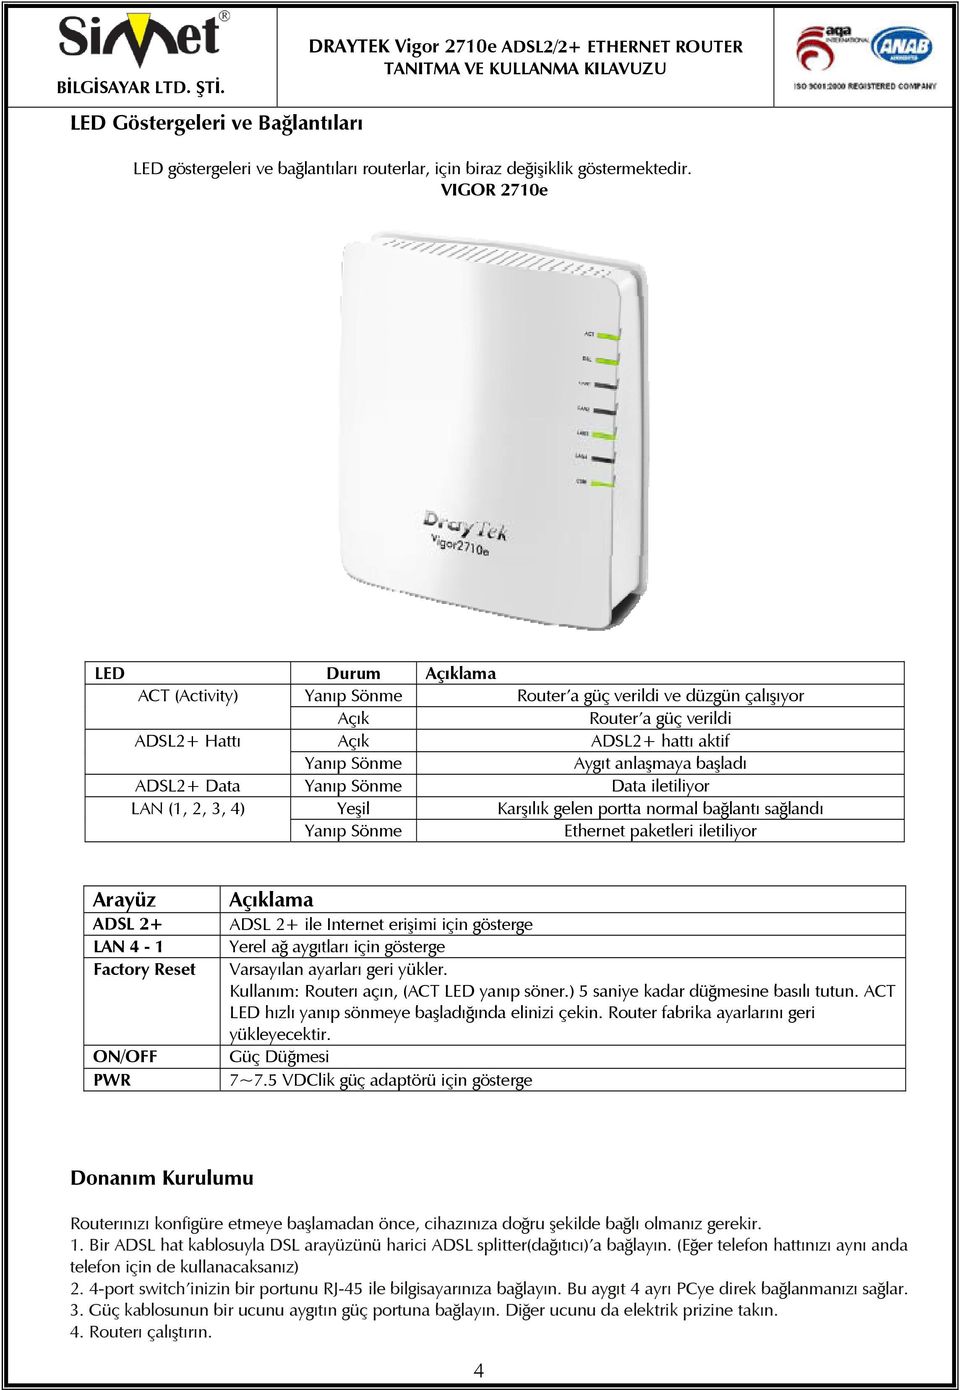 ADSL2+ Data Yanıp Sönme Data iletiliyor LAN (1, 2, 3, 4) Yeşil Karşılık gelen portta normal bağlantı sağlandı Yanıp Sönme Ethernet paketleri iletiliyor Arayüz ADSL 2+ LAN 4-1 Factory Reset ON/OFF PWR